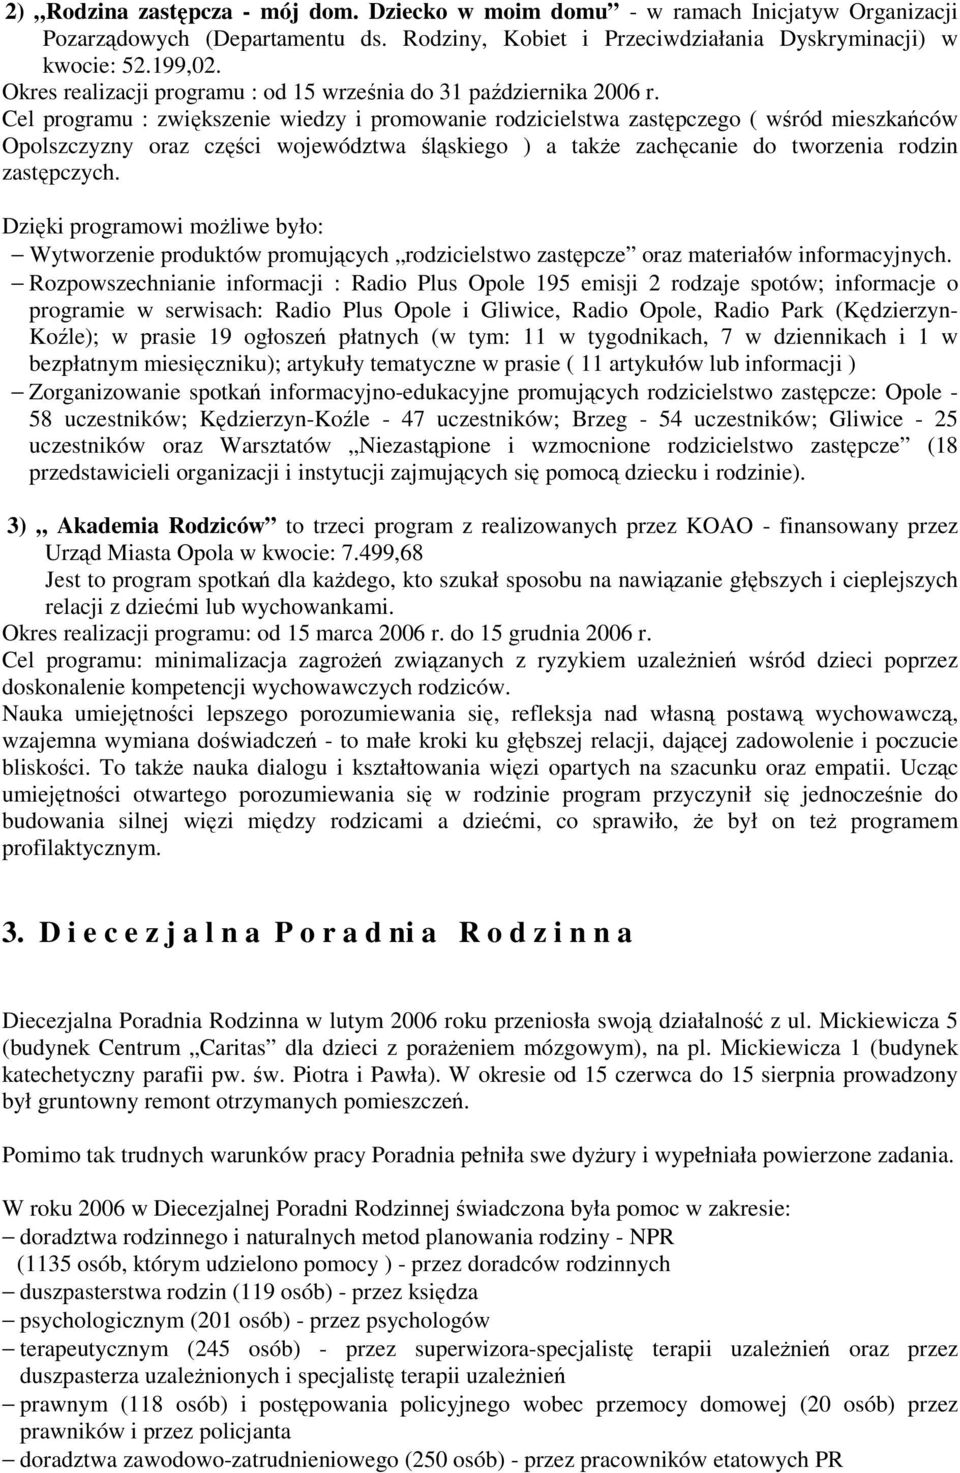 Cel programu : zwiększenie wiedzy i promowanie rodzicielstwa zastępczego ( wśród mieszkańców Opolszczyzny oraz części województwa śląskiego ) a takŝe zachęcanie do tworzenia rodzin zastępczych.